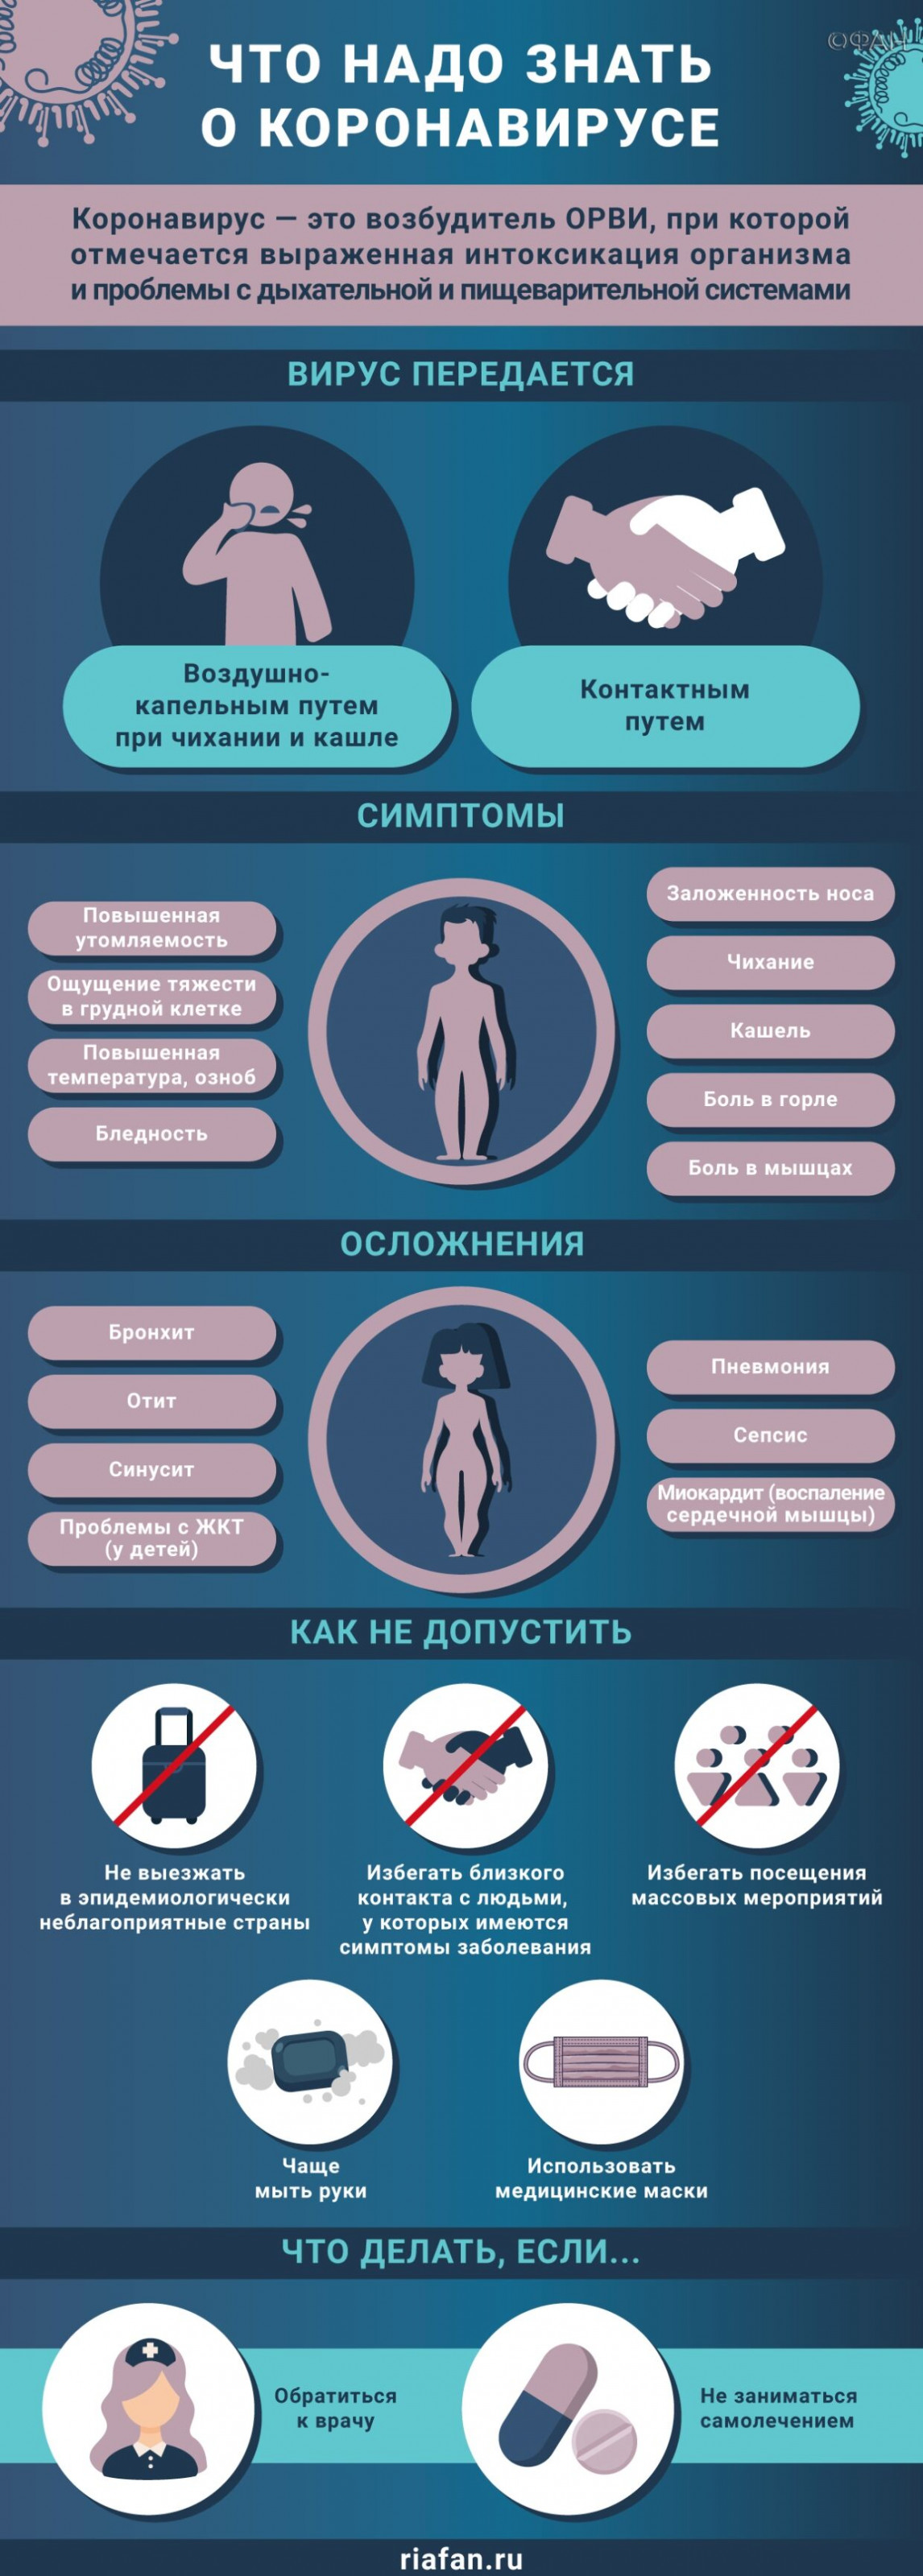 В Петербурге за сутки выявили 232 новых случая коронавируса